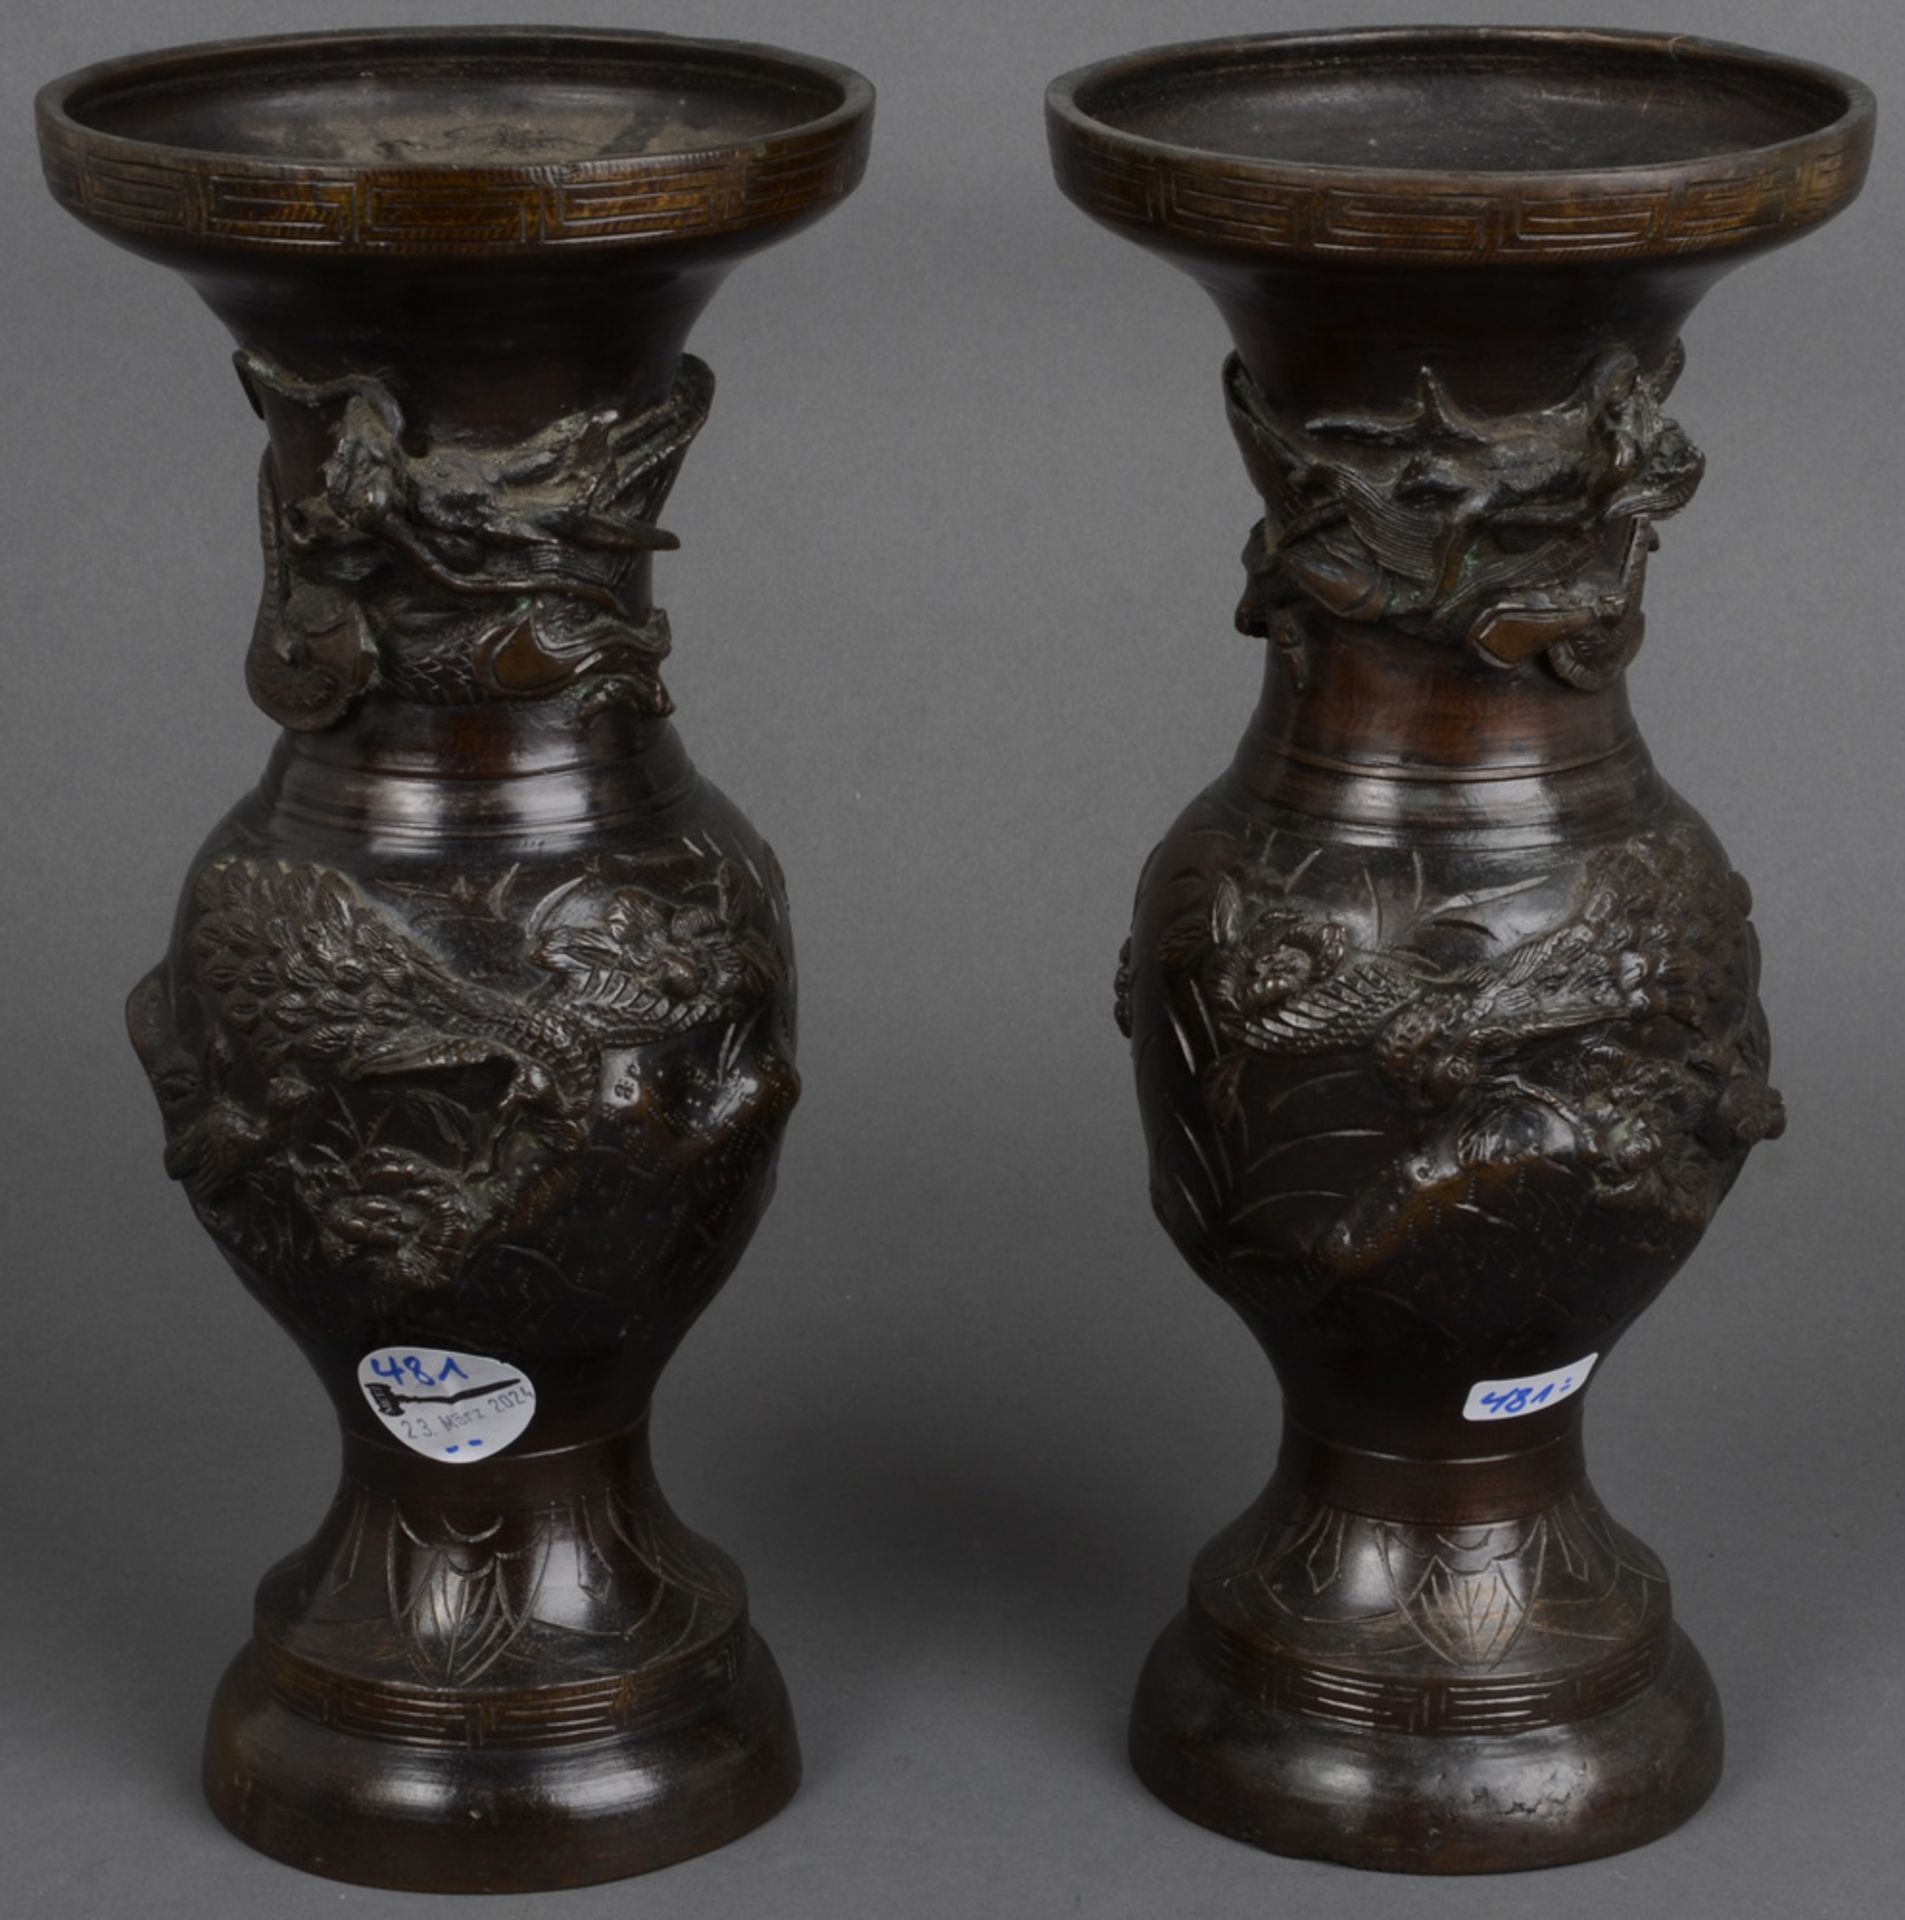 Paar Vasen. Asien. Bronze, mit Reliefdekor, H=je 29,5 cm.